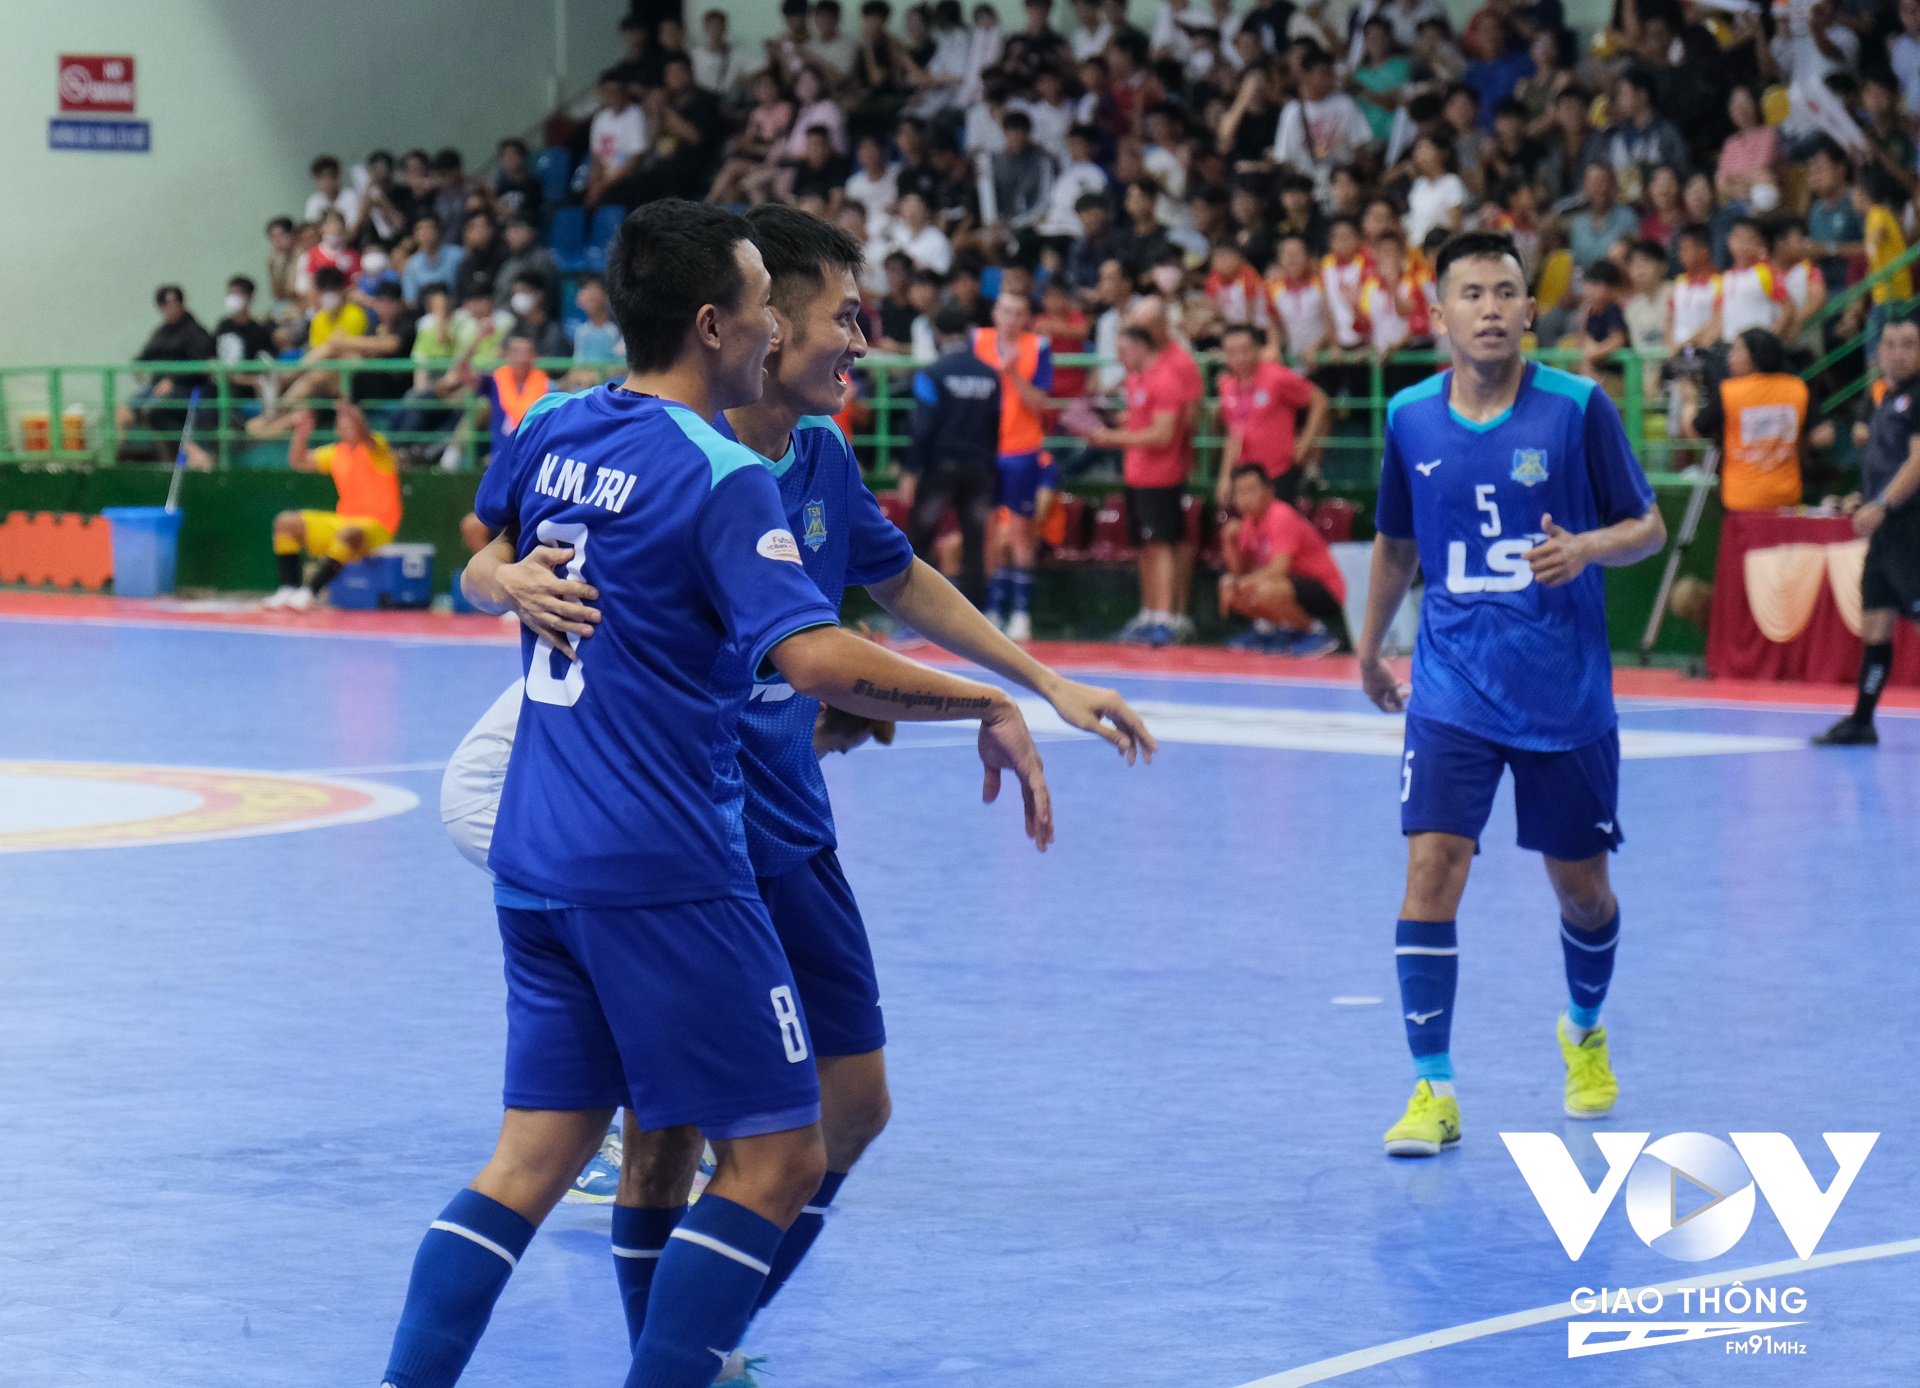 Hiệp 2 diễn ra với sự ăn miếng trả miếng giữa 2 CLB, tận dụng sơ hở Cầu Thủ Nguyễn Minh Trí (8) đã ghi liên tiếp 2 bàn thắng ở những phút cuối trận, mang về chiến thắng 5-0 cho CLB Thái Sơn Nam.